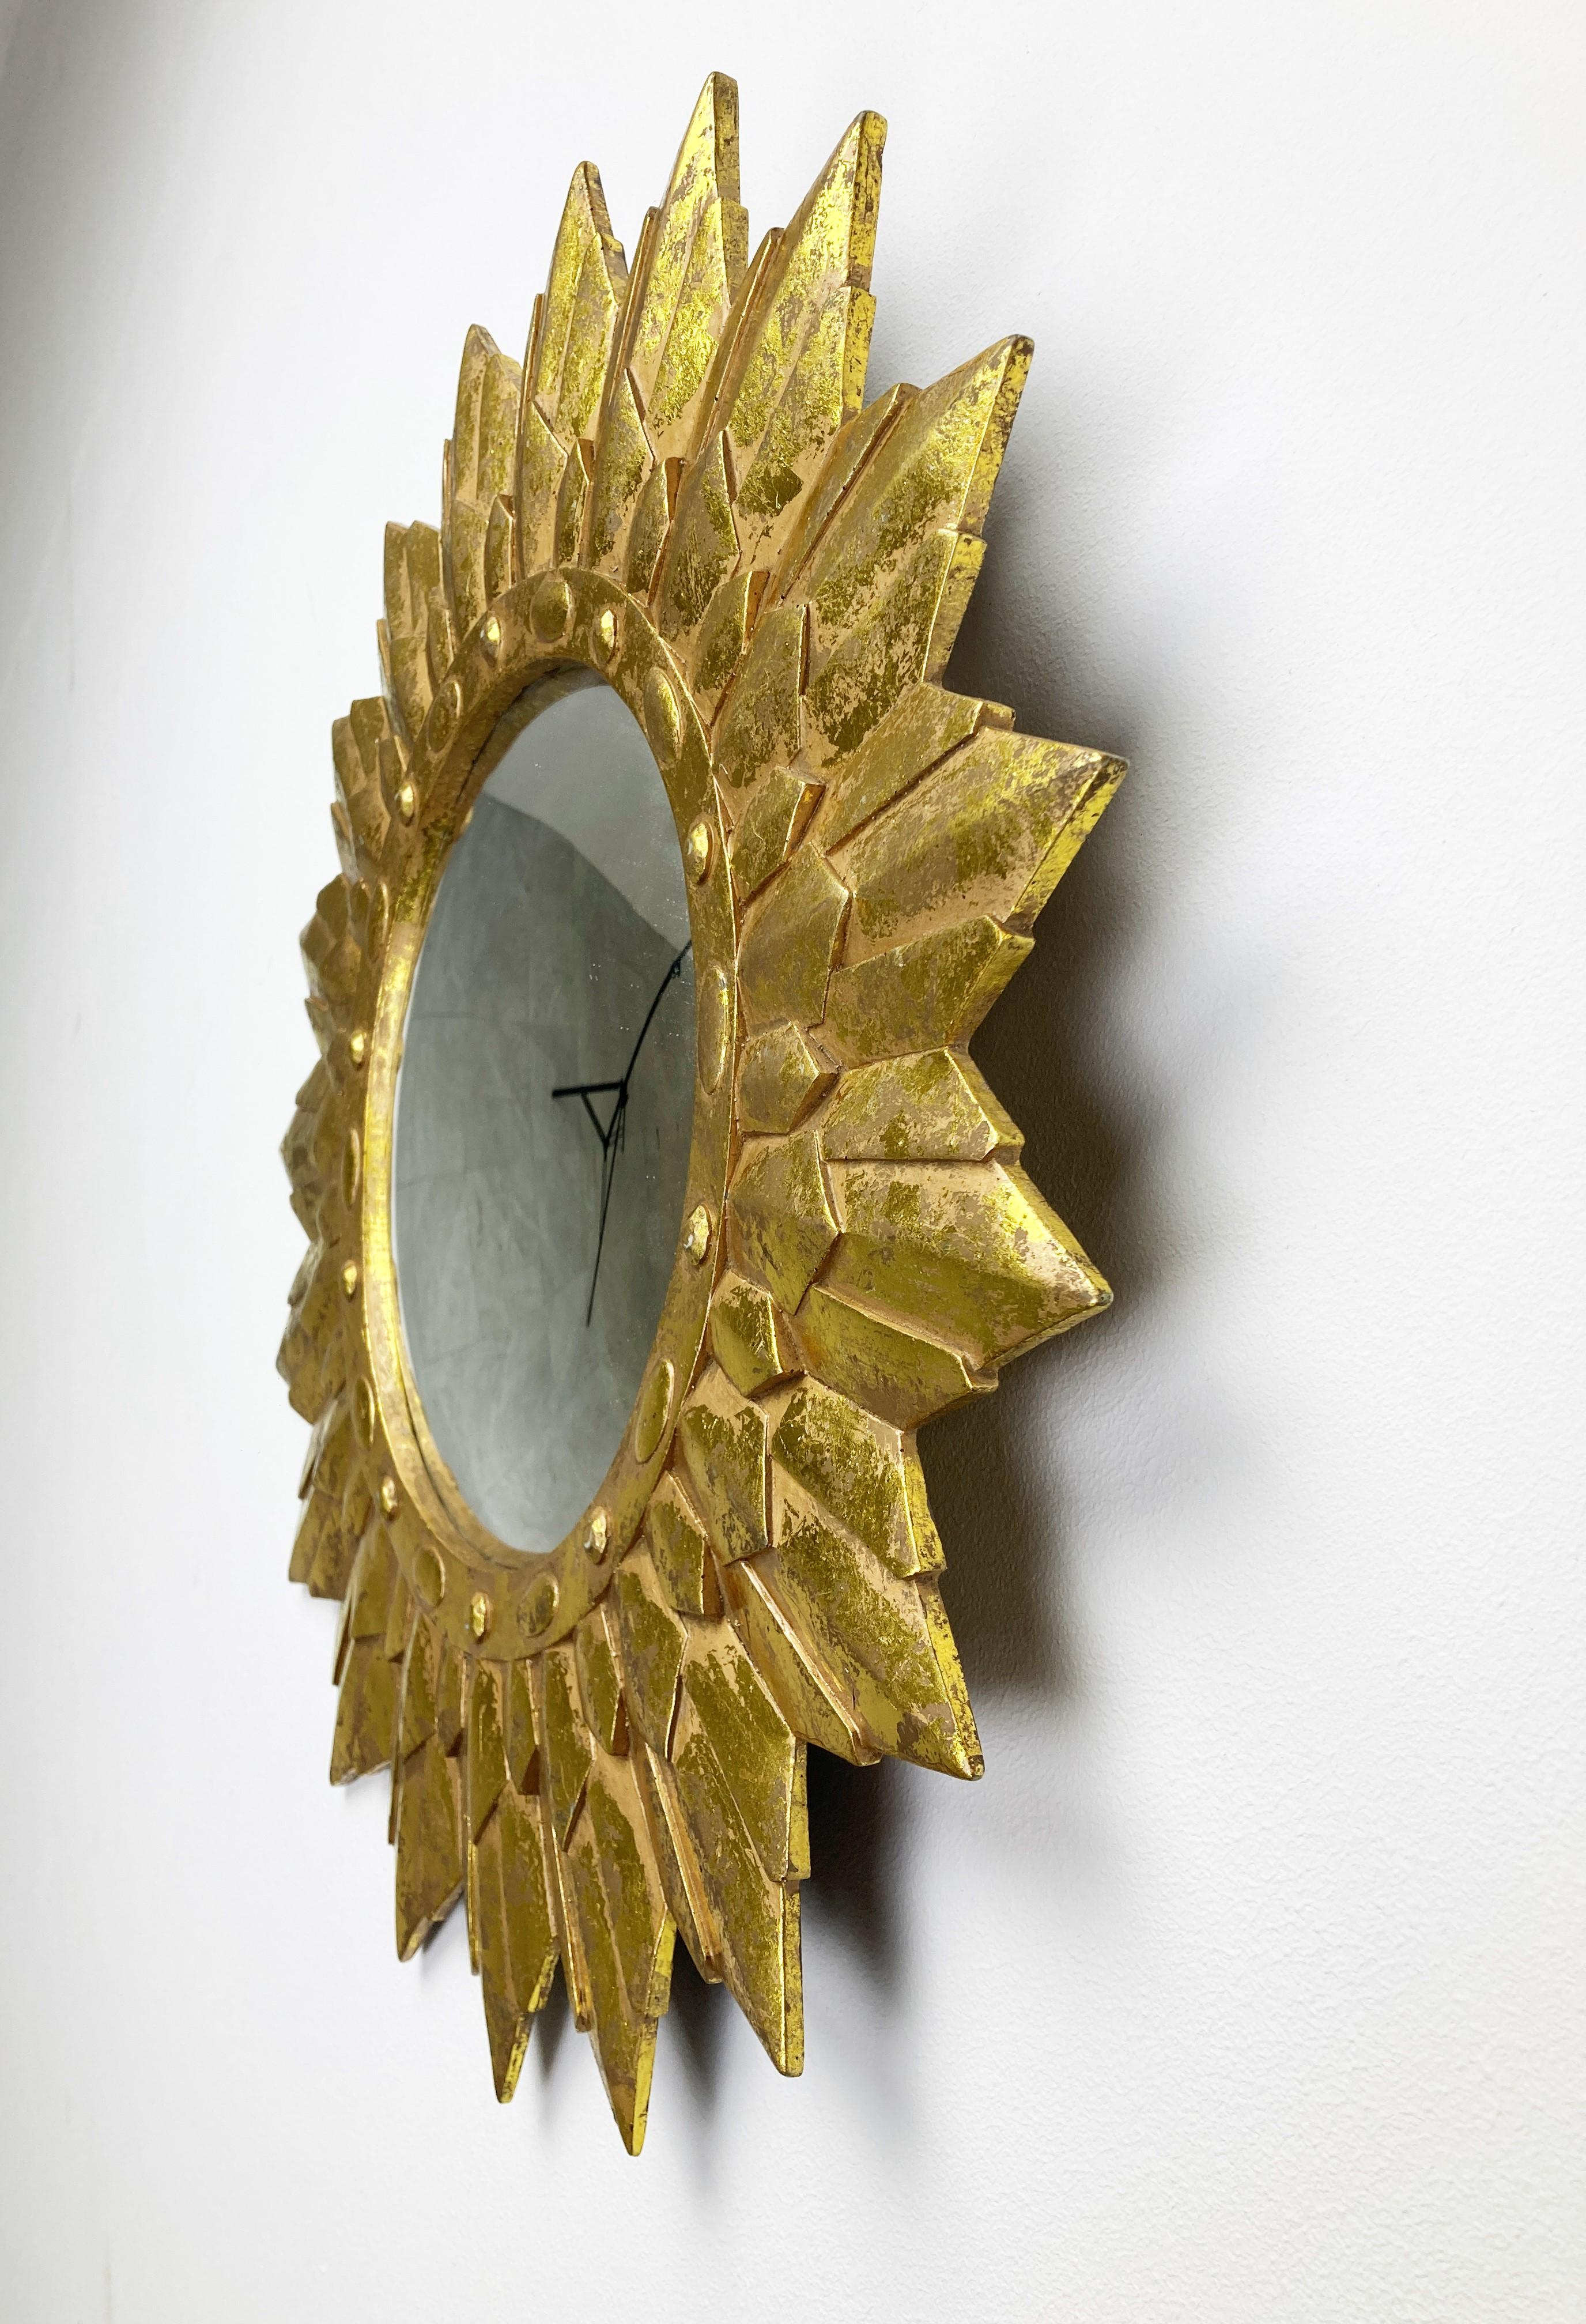 Miroir soleil en résine dorée avec verre miroir convexe.

Le miroir doré est en très bon état, magnifiquement patiné.

Années 1960 - fabriqué en Belgique.

Dimensions :
Diamètre : 50 cm.

    